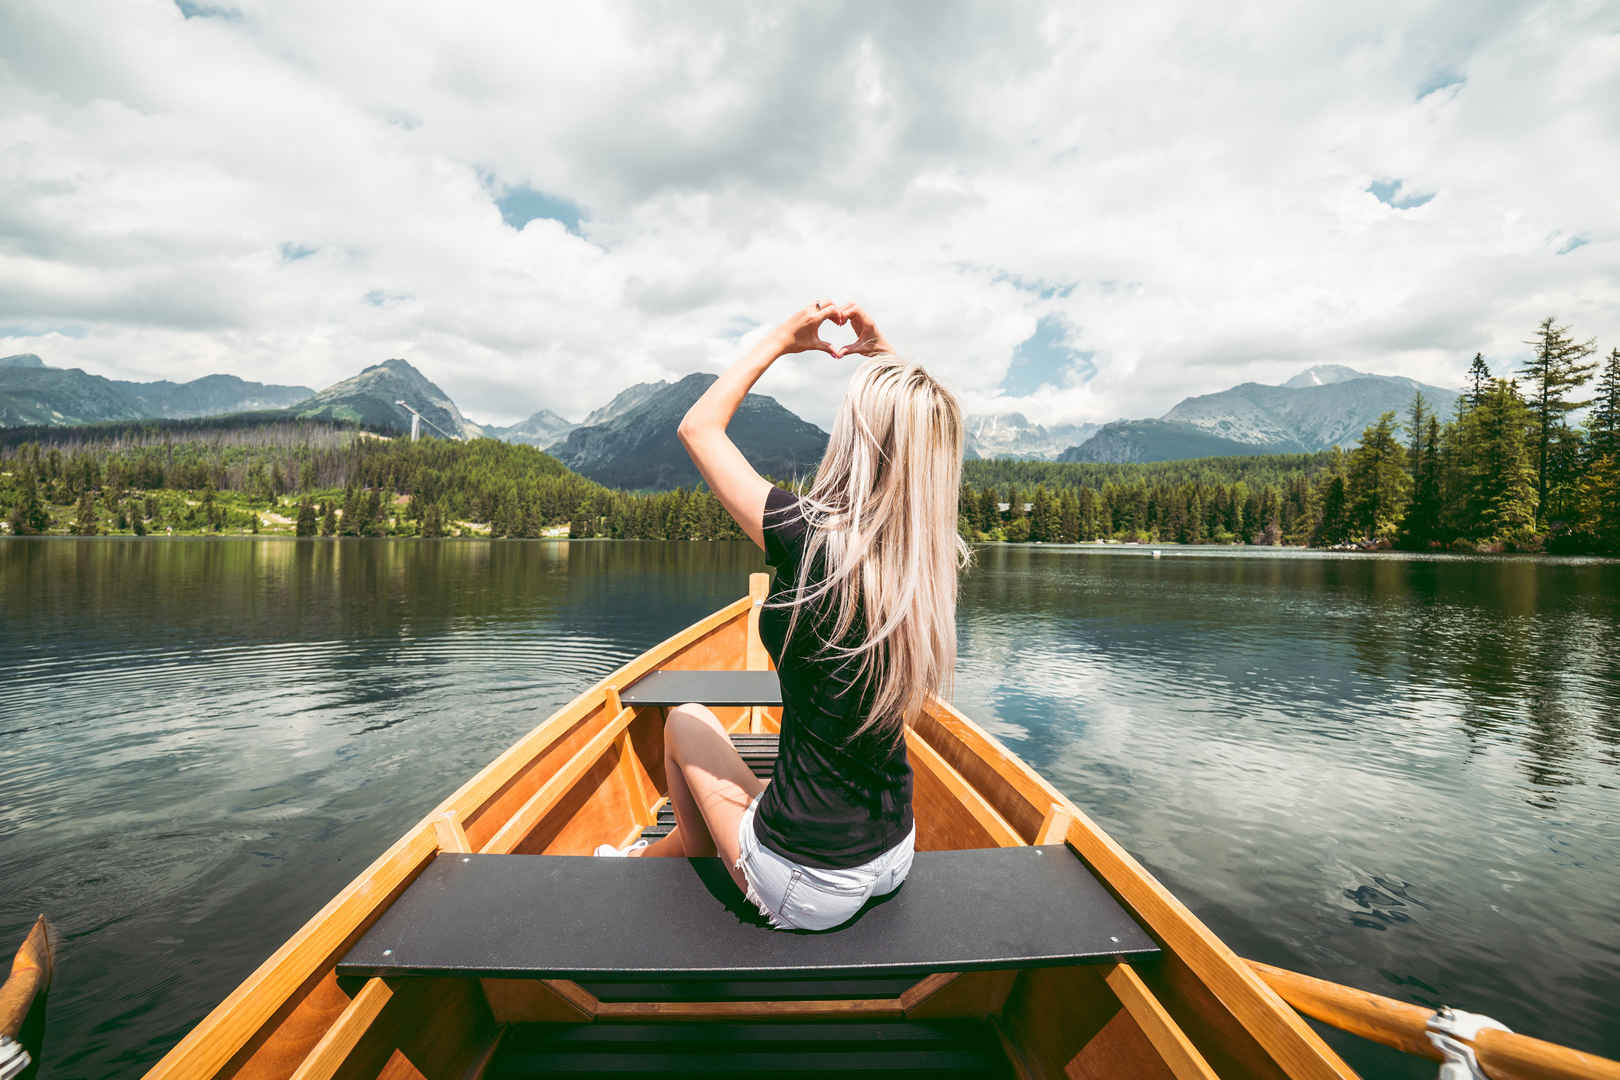 自然风景 森林 湖泊 船 女孩 手 心形 4k图片